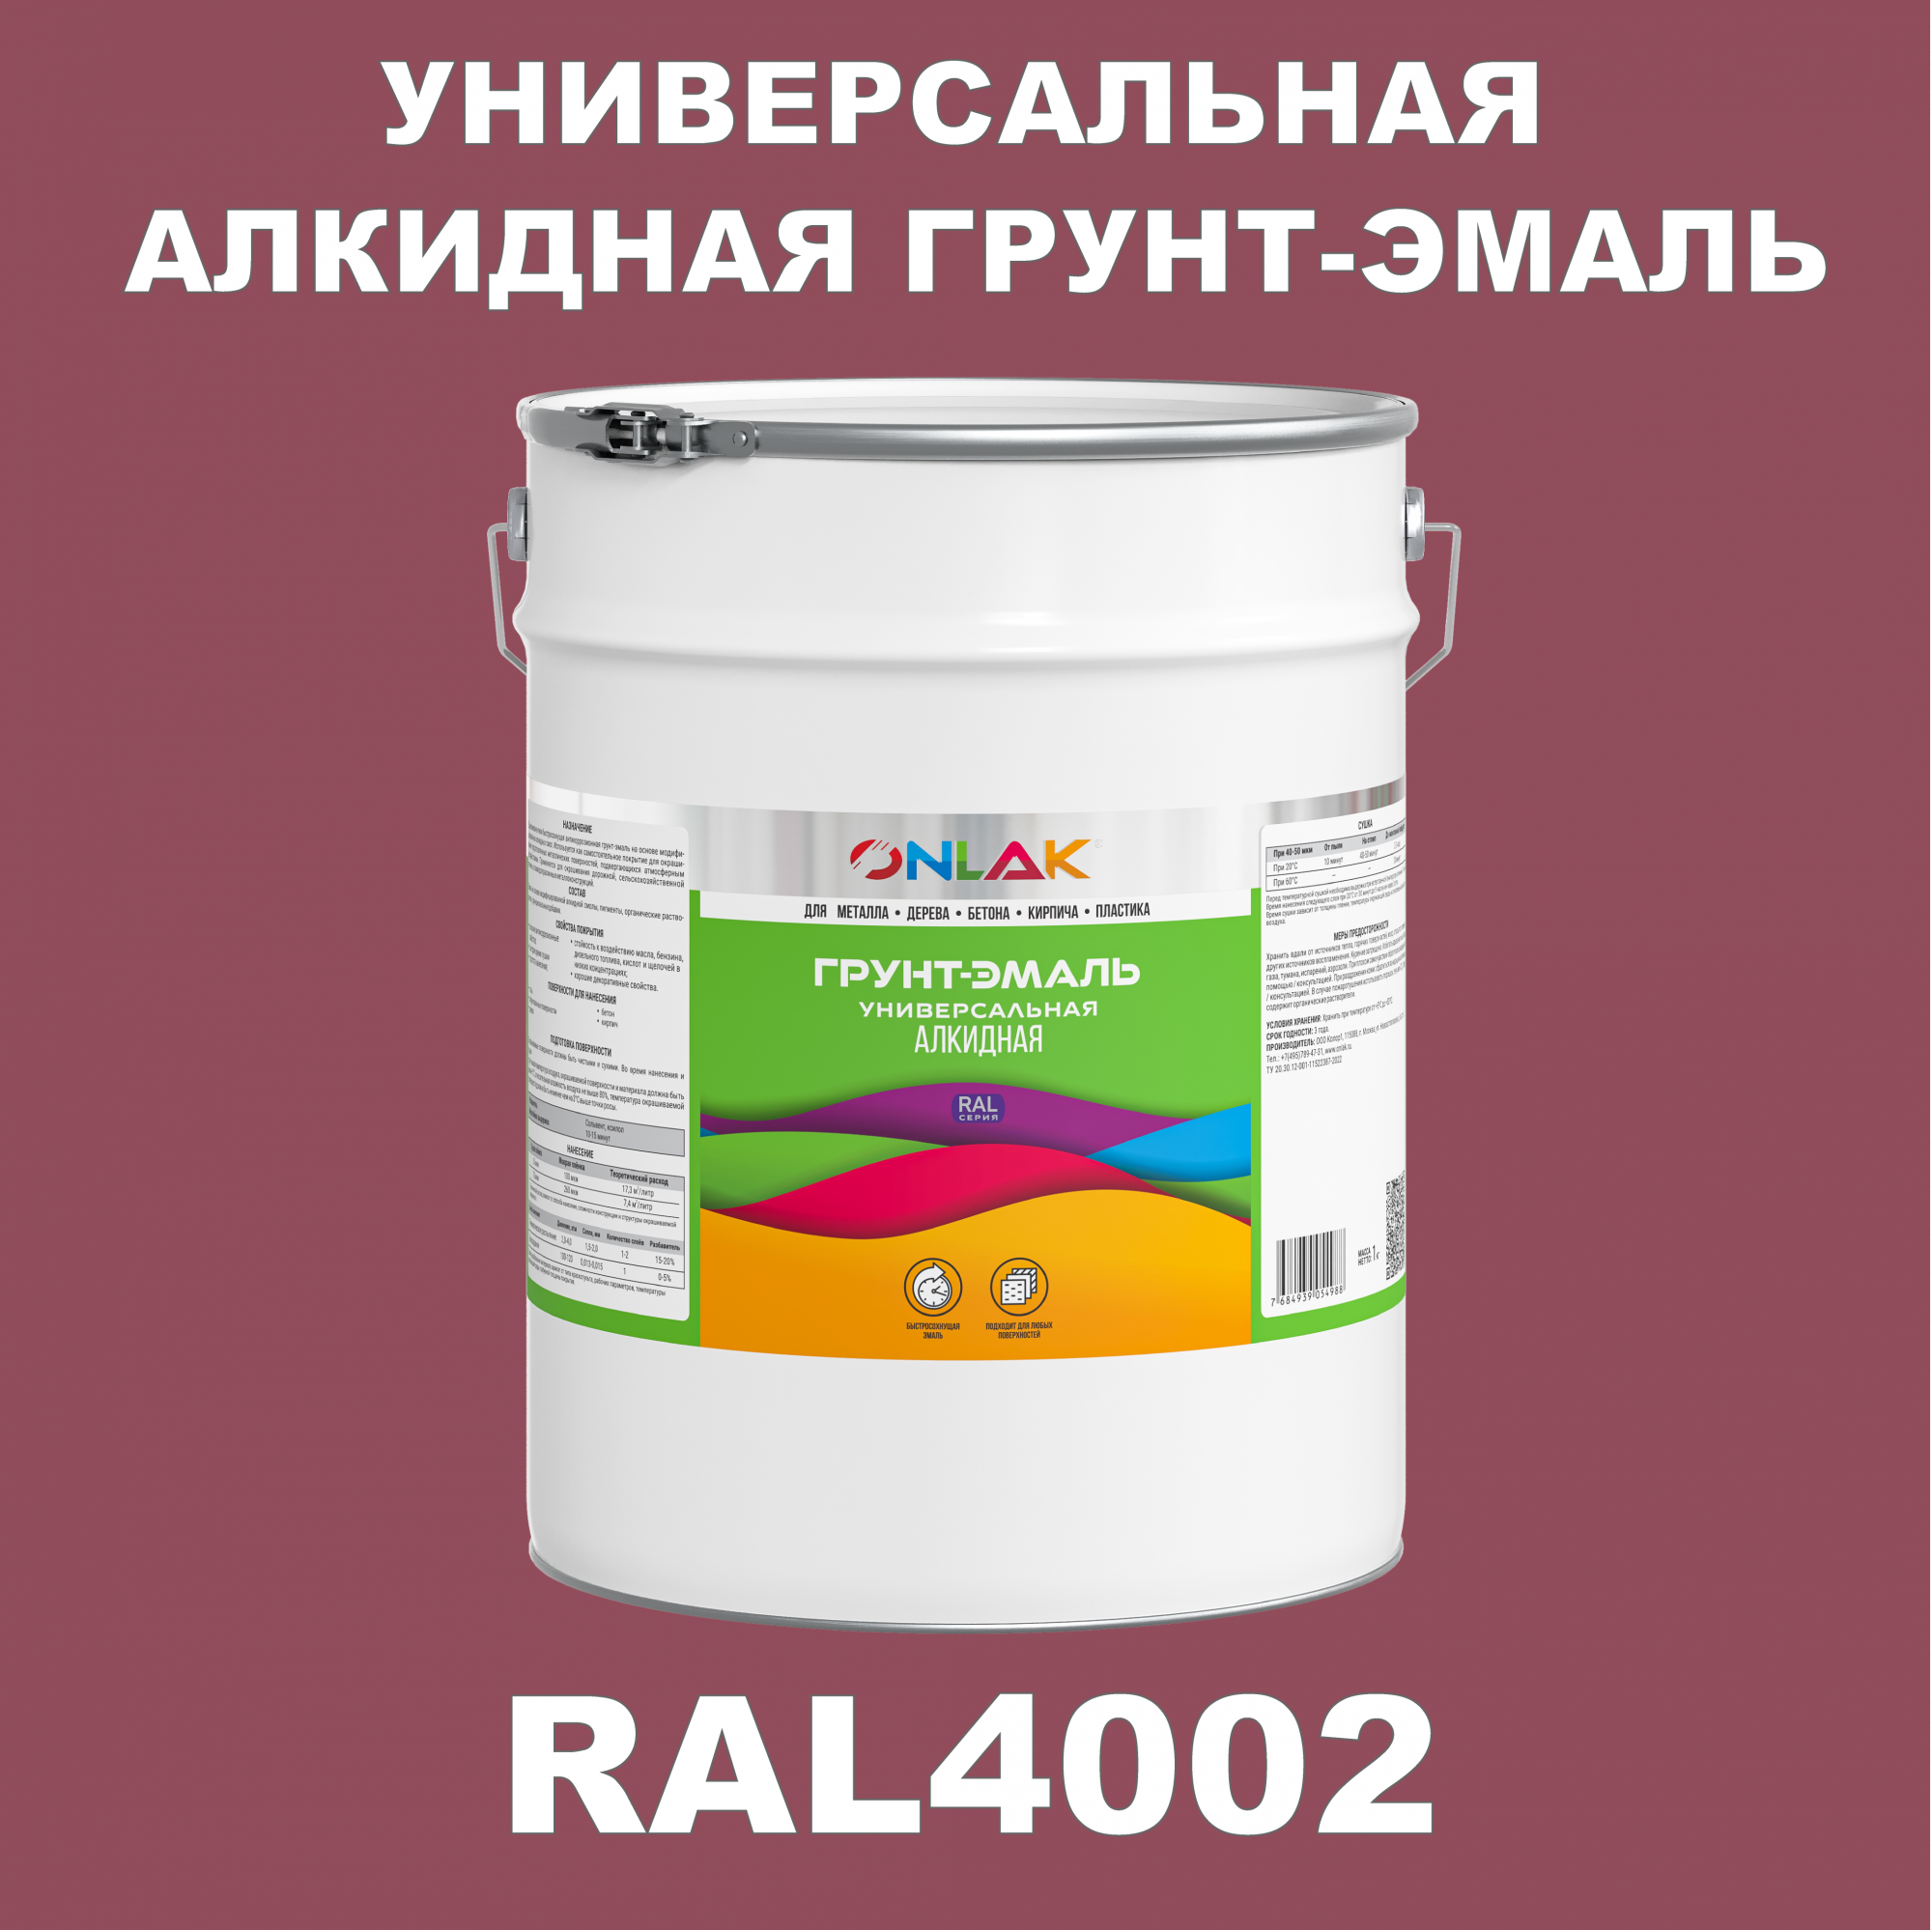 Грунт-эмаль ONLAK 1К RAL4002 антикоррозионная алкидная по металлу по ржавчине 20 кг антикоррозионная грунт эмаль onlak ral 4012 фиолетовый 715 мл